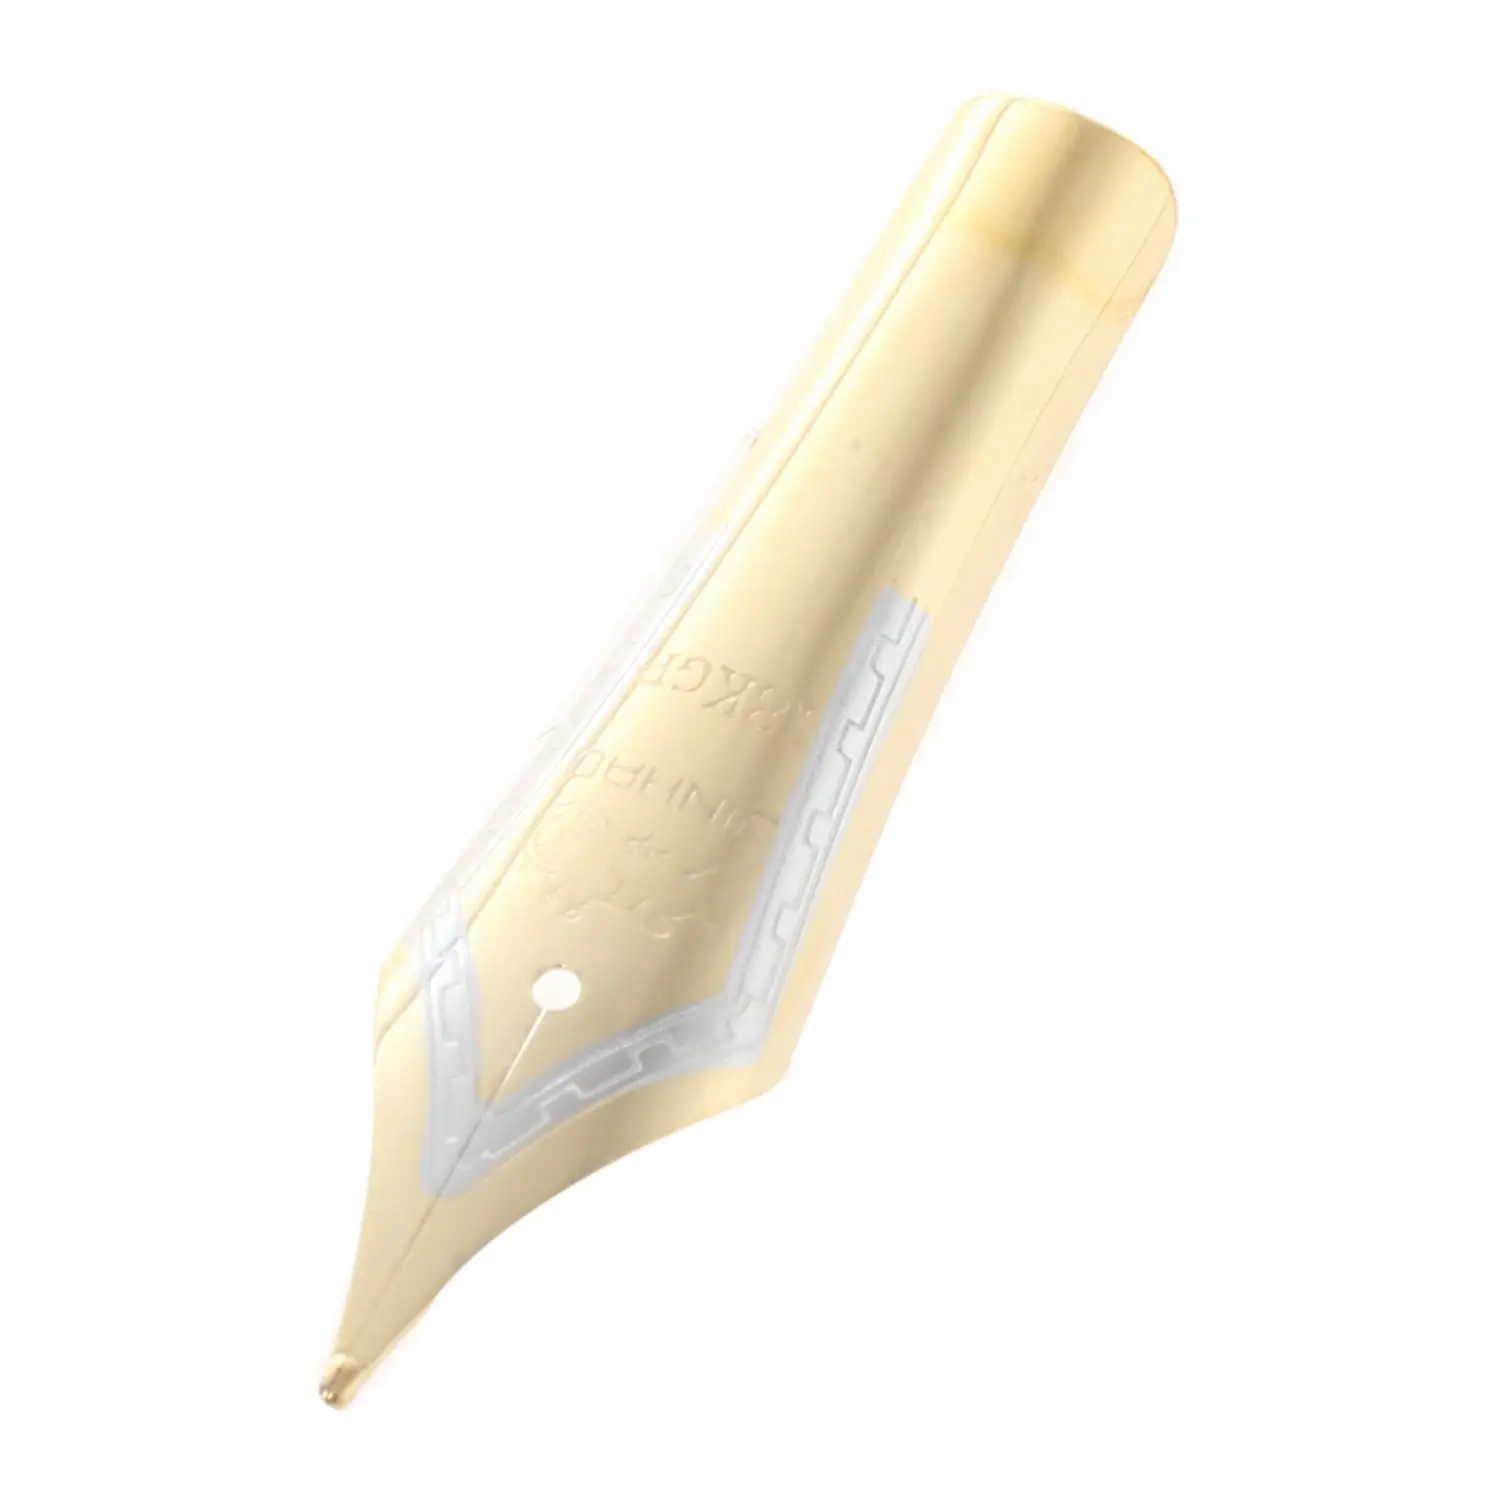 4 шт./лот Jinhao 159 450 599 750 baoer 388 перьевая ручка Универсальный дизайн Большой пера Золотой наконечник 0,5 мм